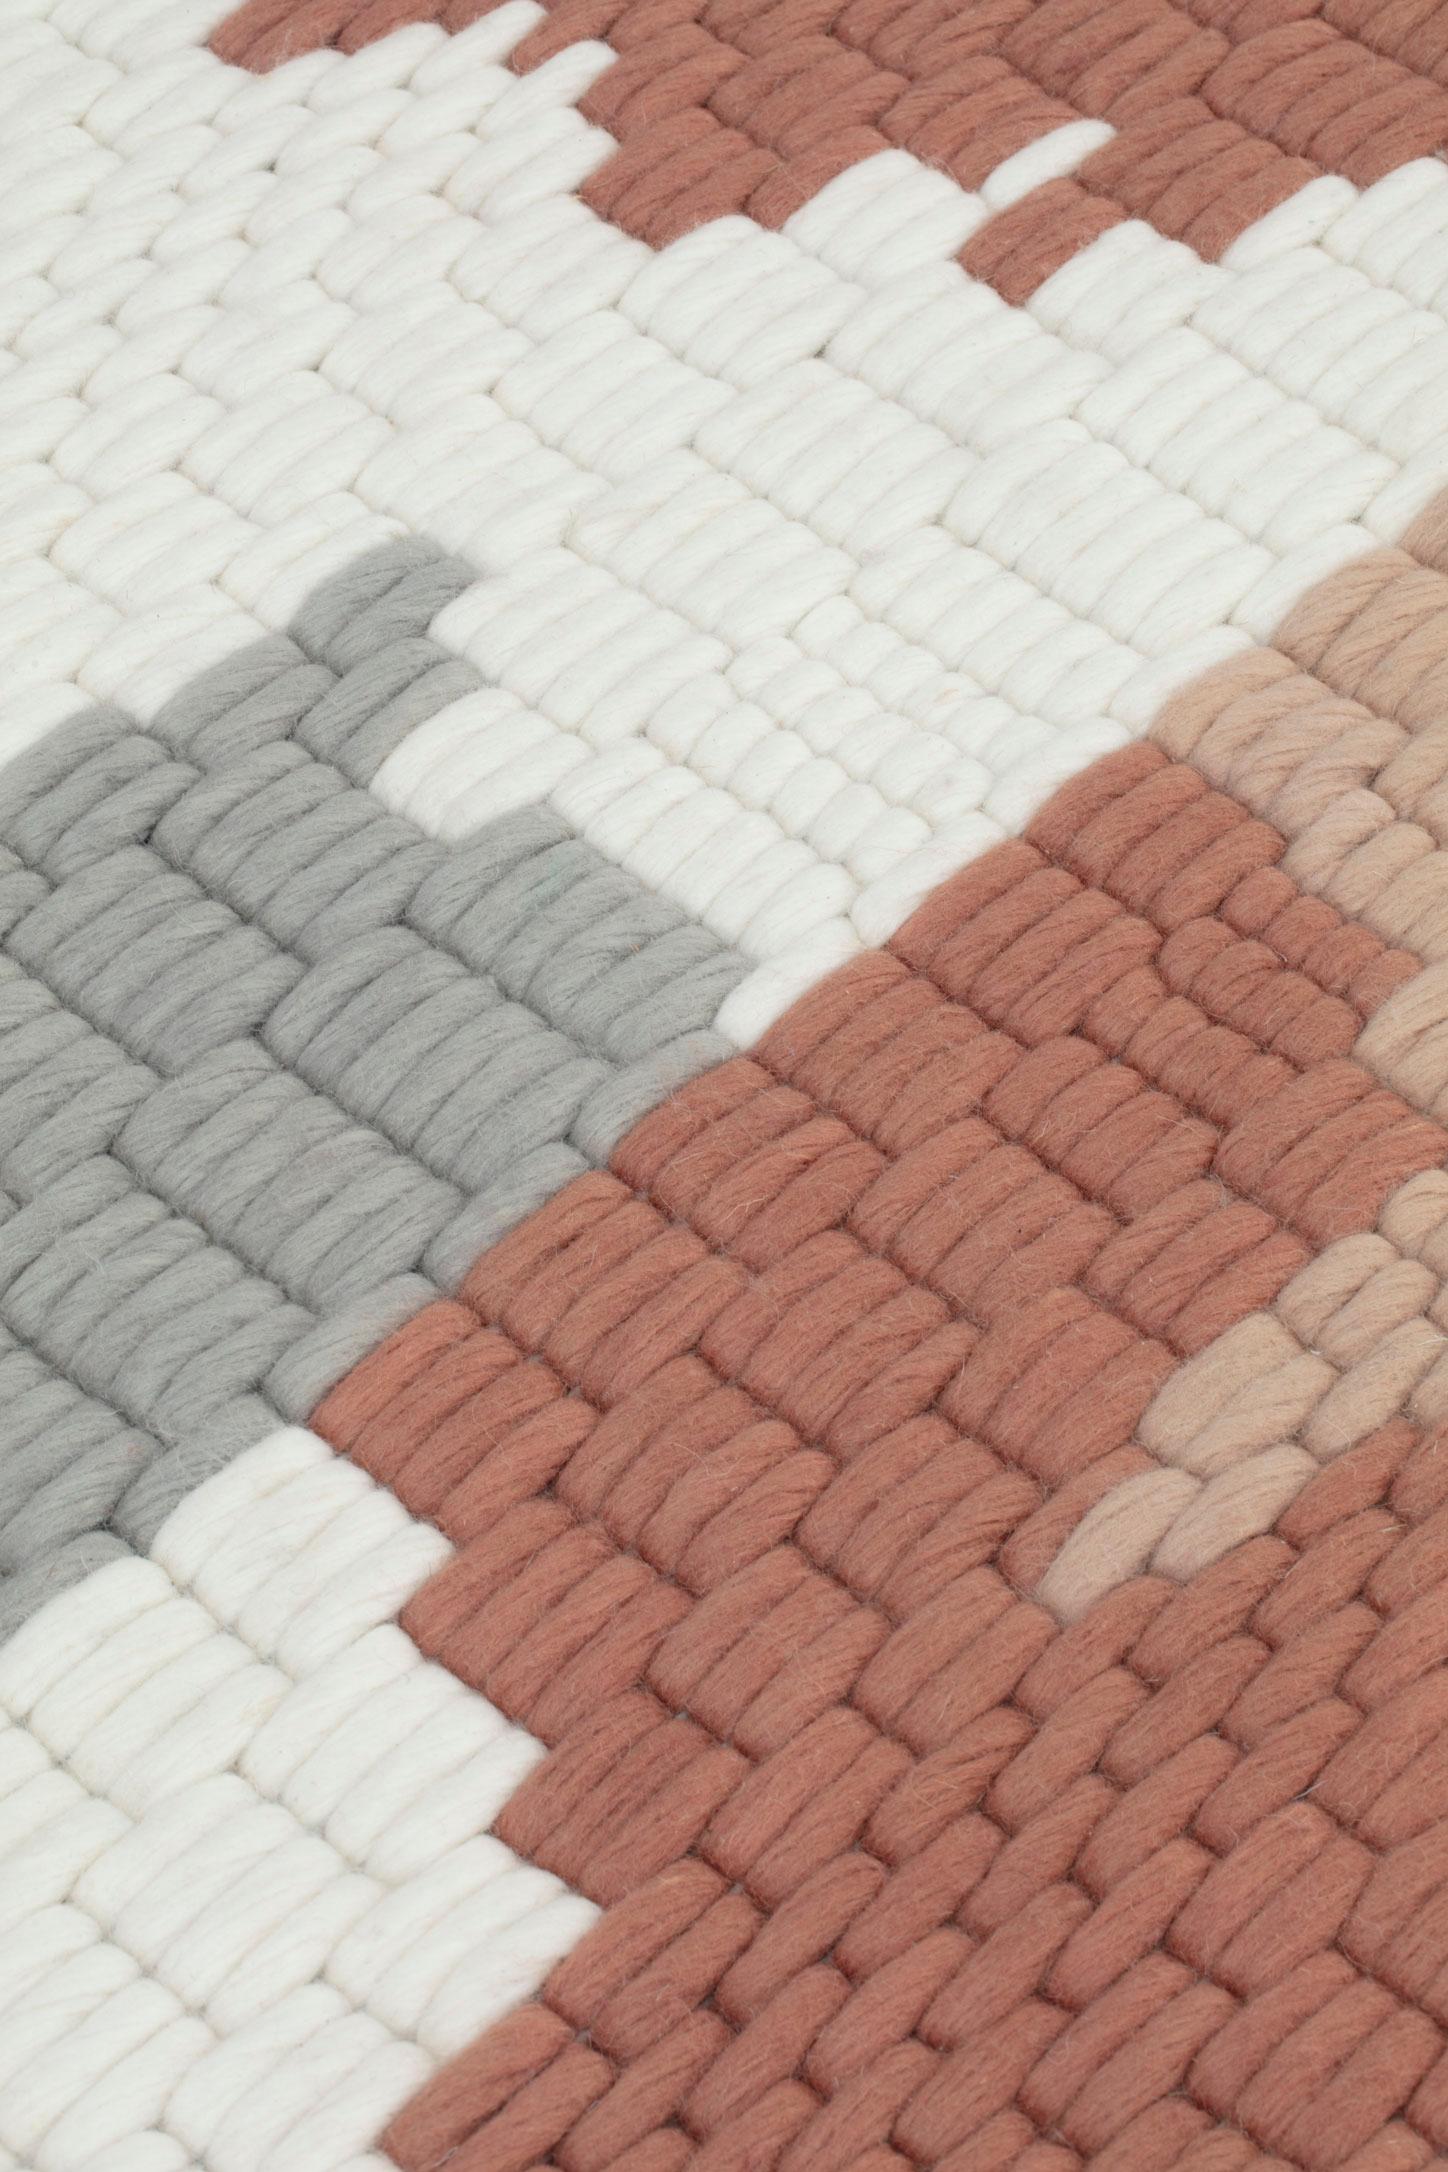 Sonora ist eine Teppichkollektion, die von der Designerin Patricia Urquiola für die Marke CC-Tapis entworfen wurde. Die Teppiche der Sonora-Kollektion werden aus Wolle in der 